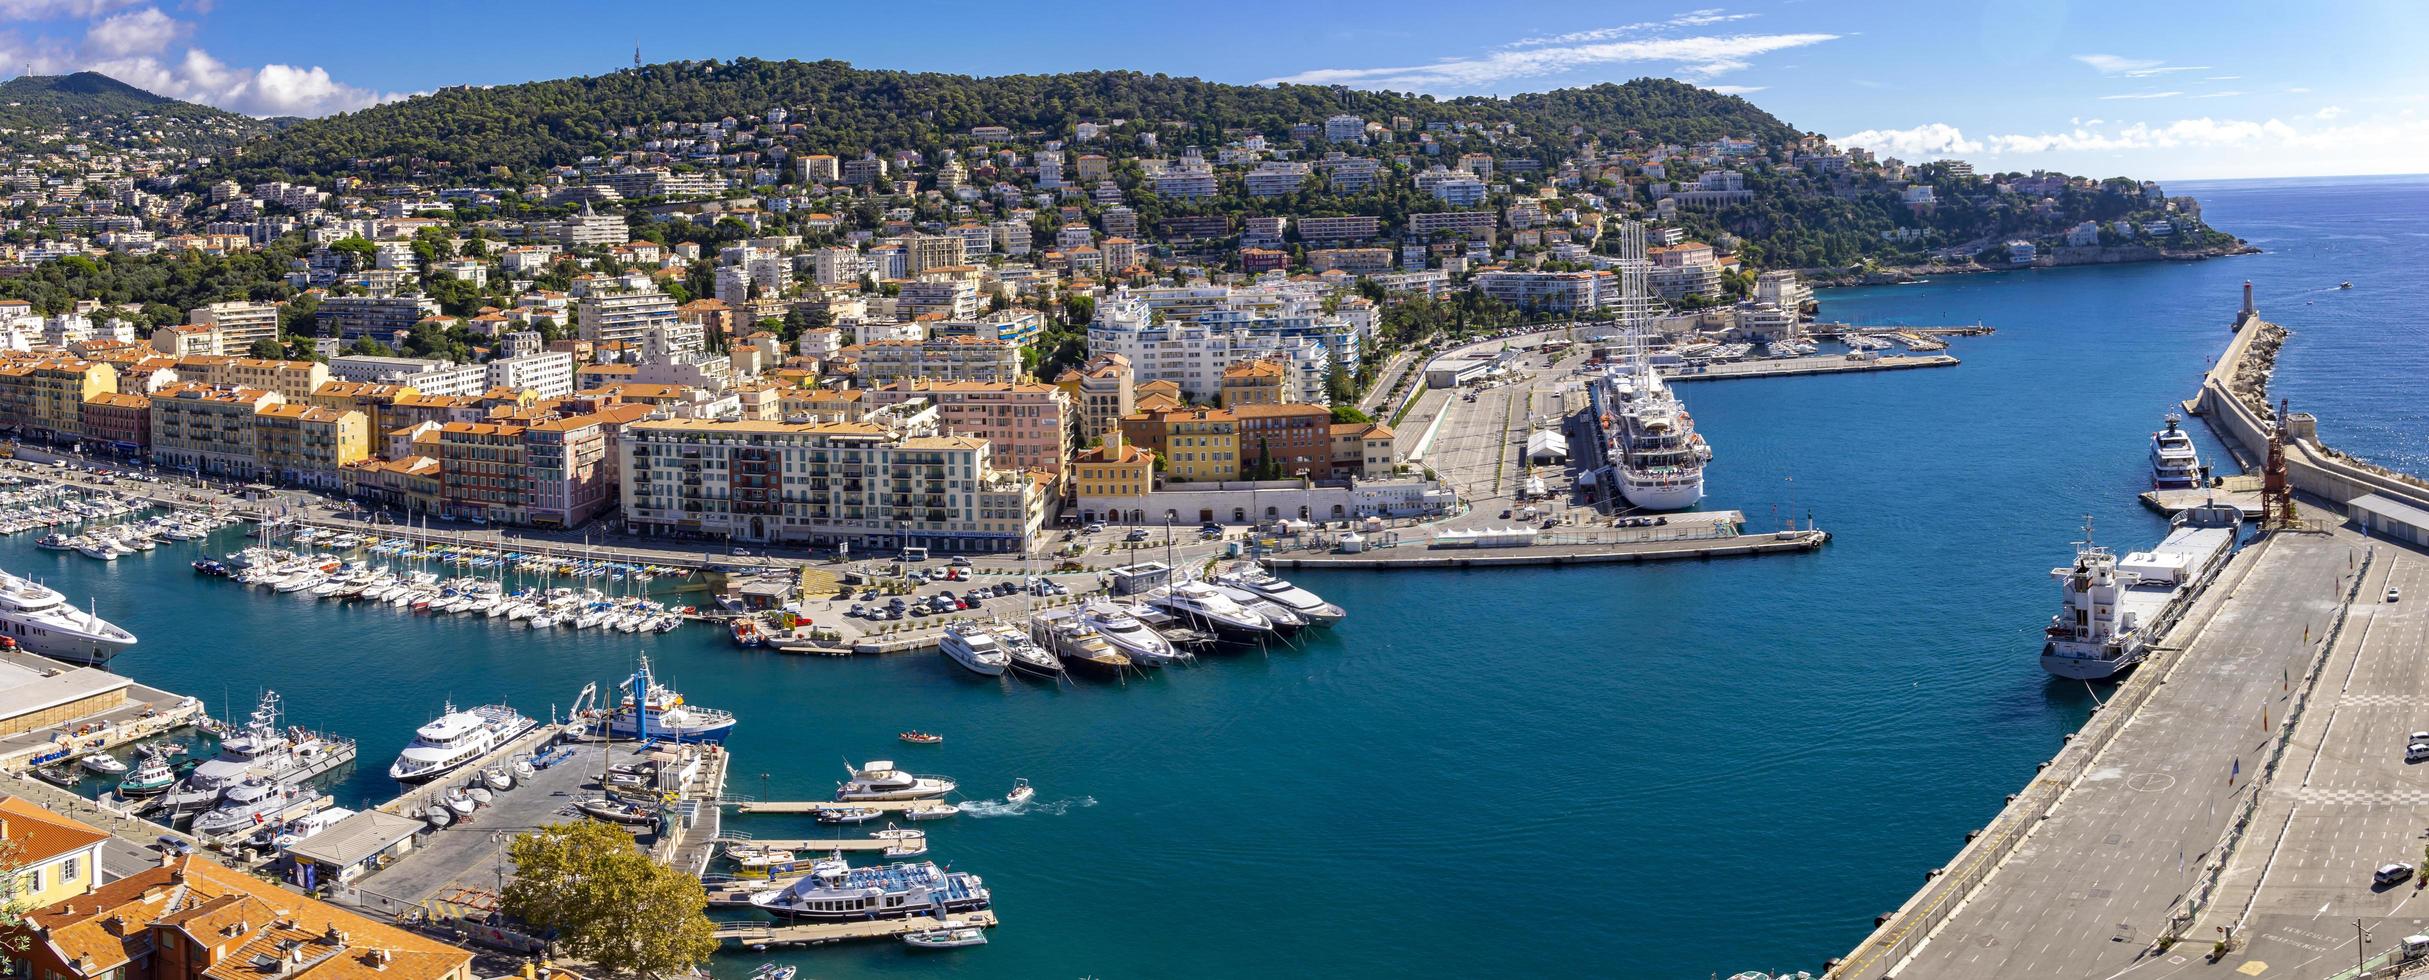 Nice, Frankrike, 6 oktober 2019 - Visa vid Port Lympia i Nice, Frankrike. buit 1748, det är en av de äldsta hamnanläggningarna på franska rivieran. foto